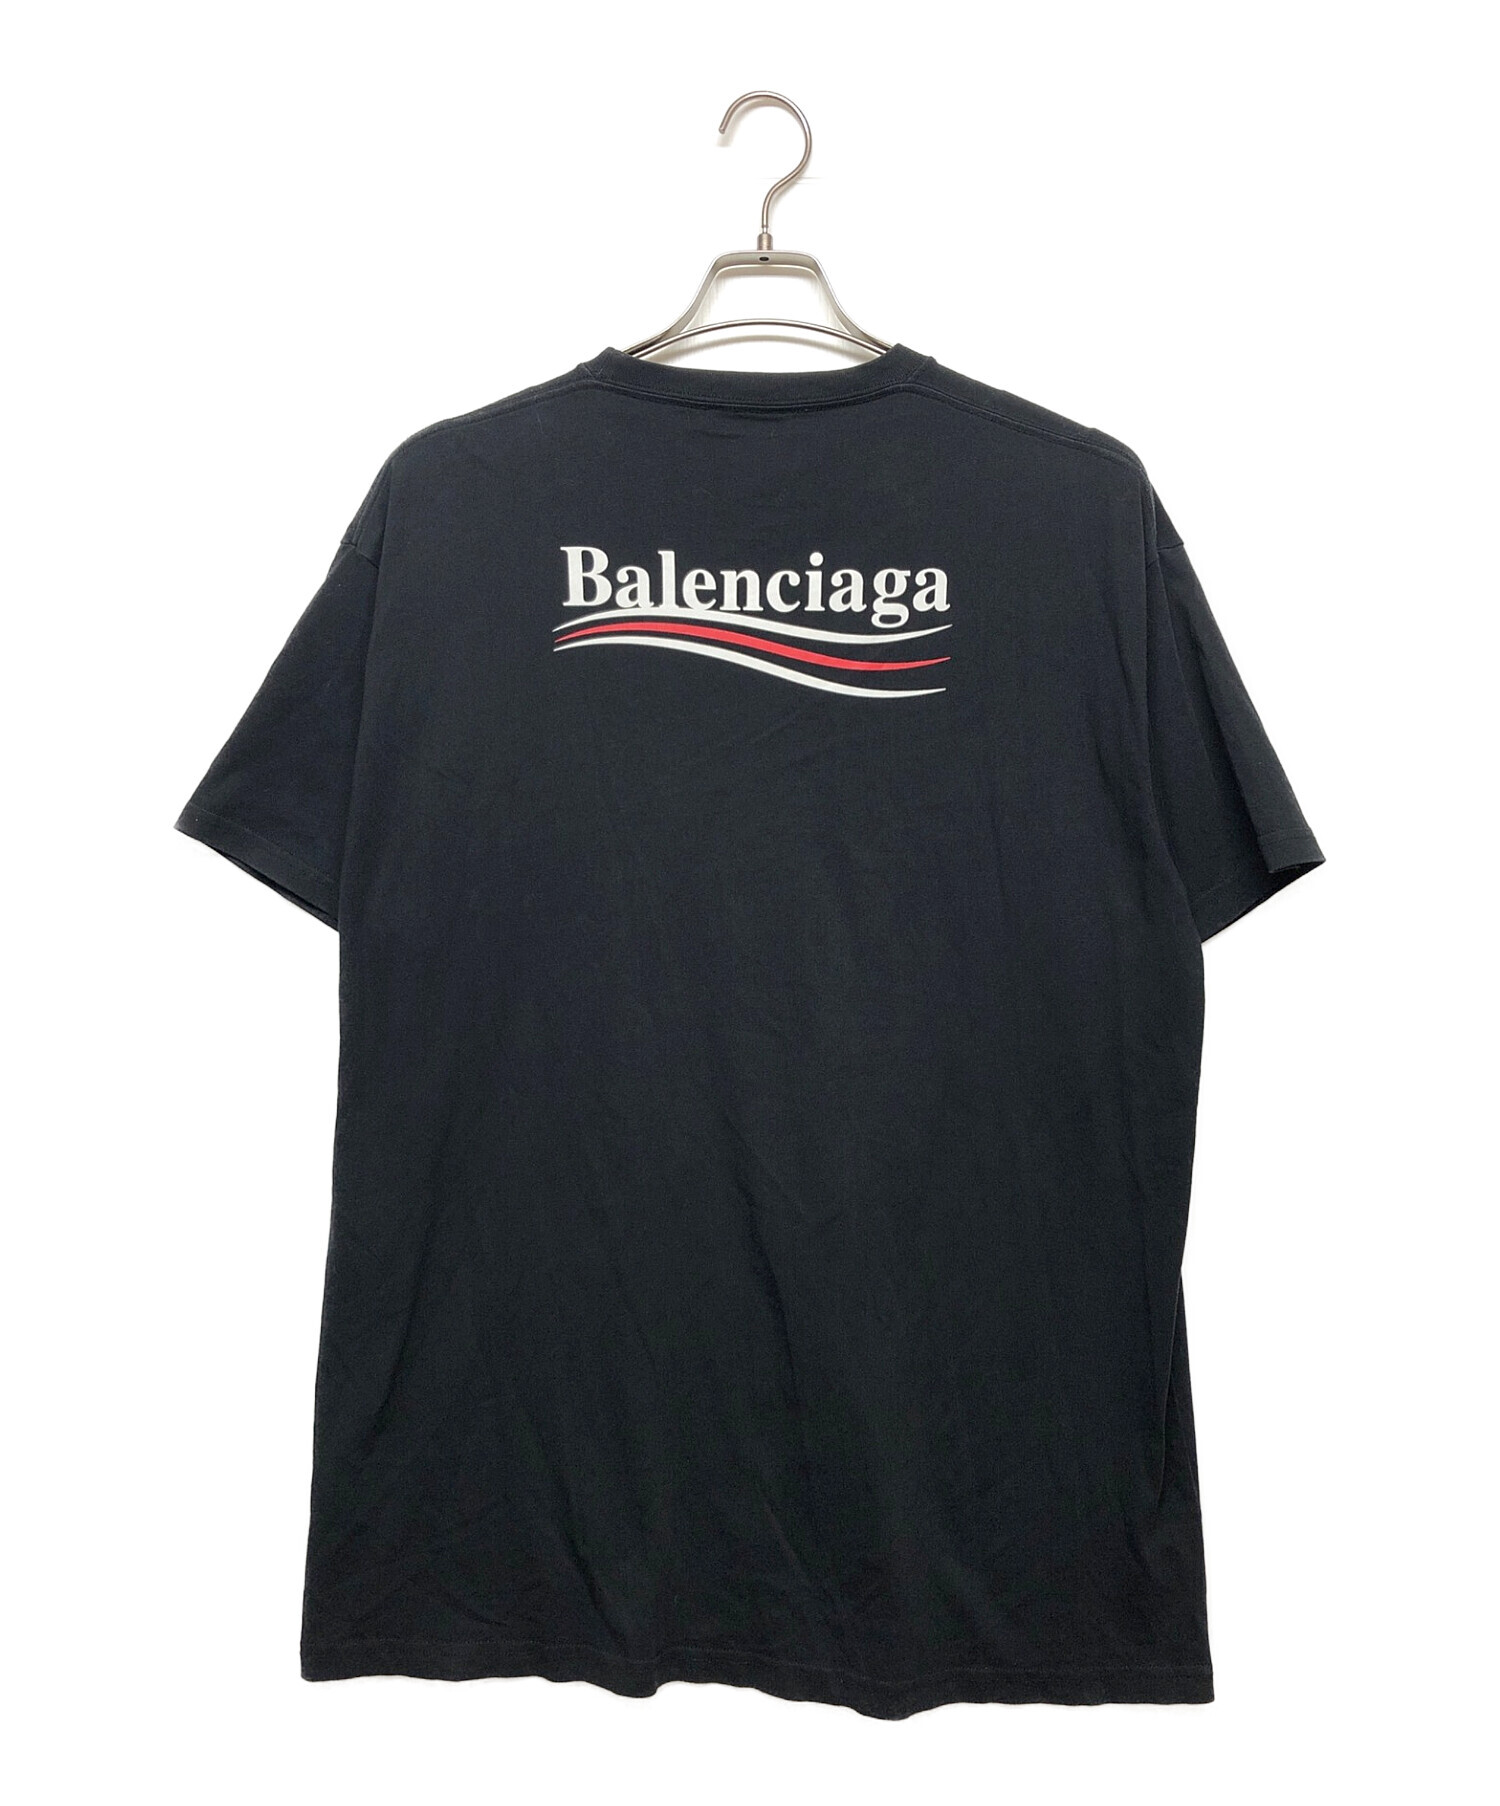 中古・古着通販】BALENCIAGA (バレンシアガ) Tシャツ ブラック サイズ